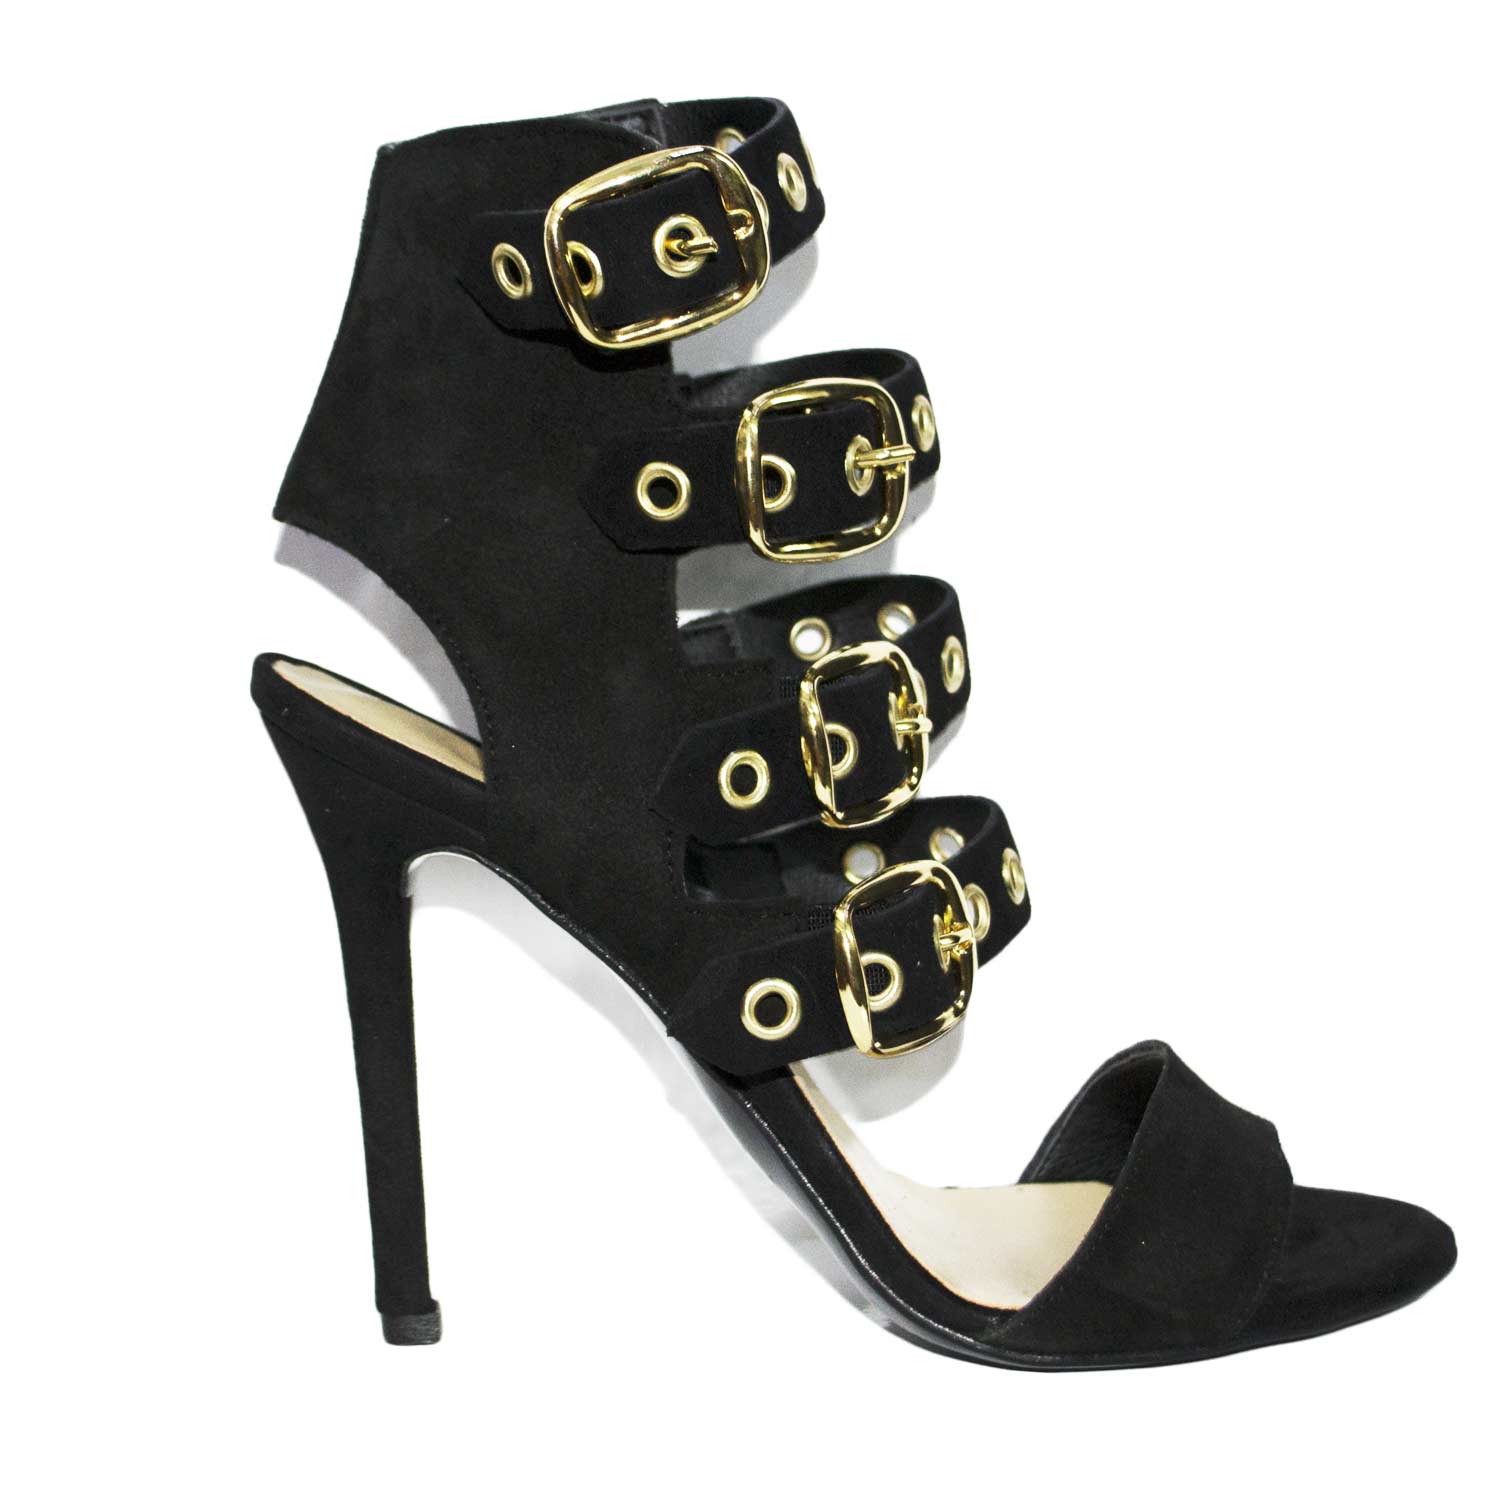 sandali tacco donna nero art.st9093 made in italy accessori fibbia oro camoscio moda comfort fondo antiscivolo .